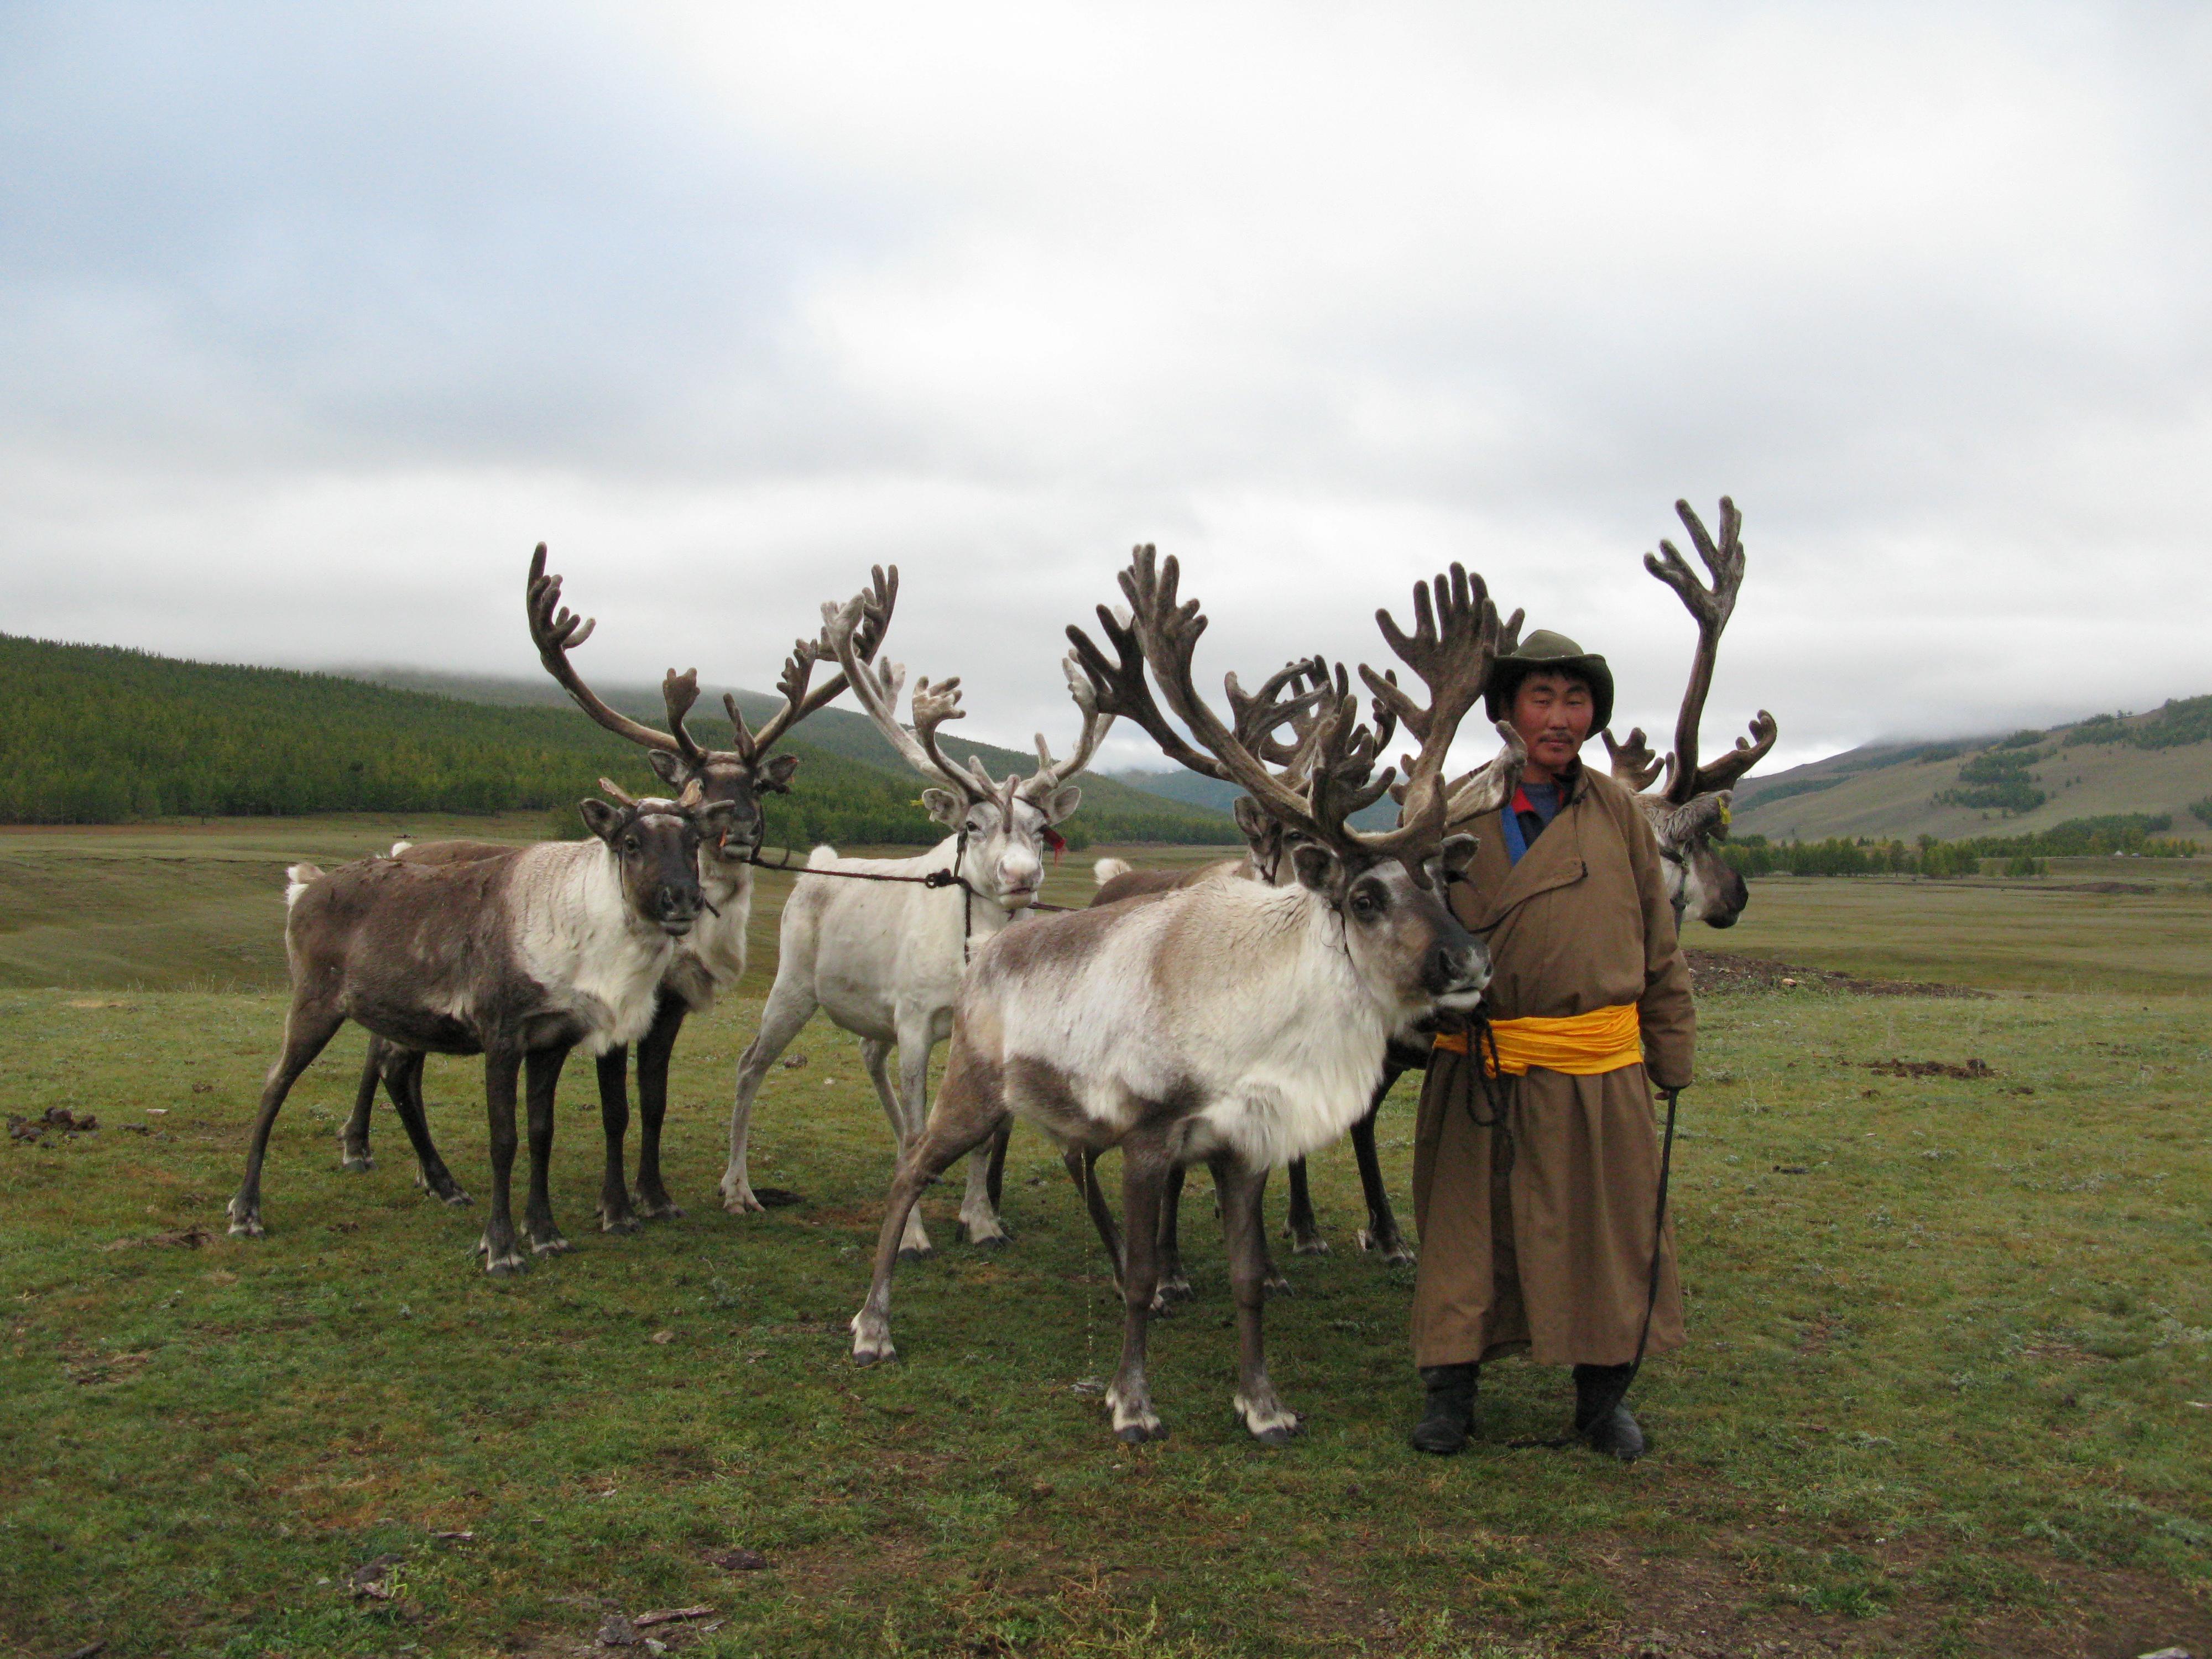 El guía tsaatan Amerjeral (llamado Khalzan) con un reno, valle de Darkhad, norte de Mongolia, septiembre de 2009. 
Fotografía: 
Paula DePriest, Instituto de Conservación del Museo, Instituto Smithsonian.
